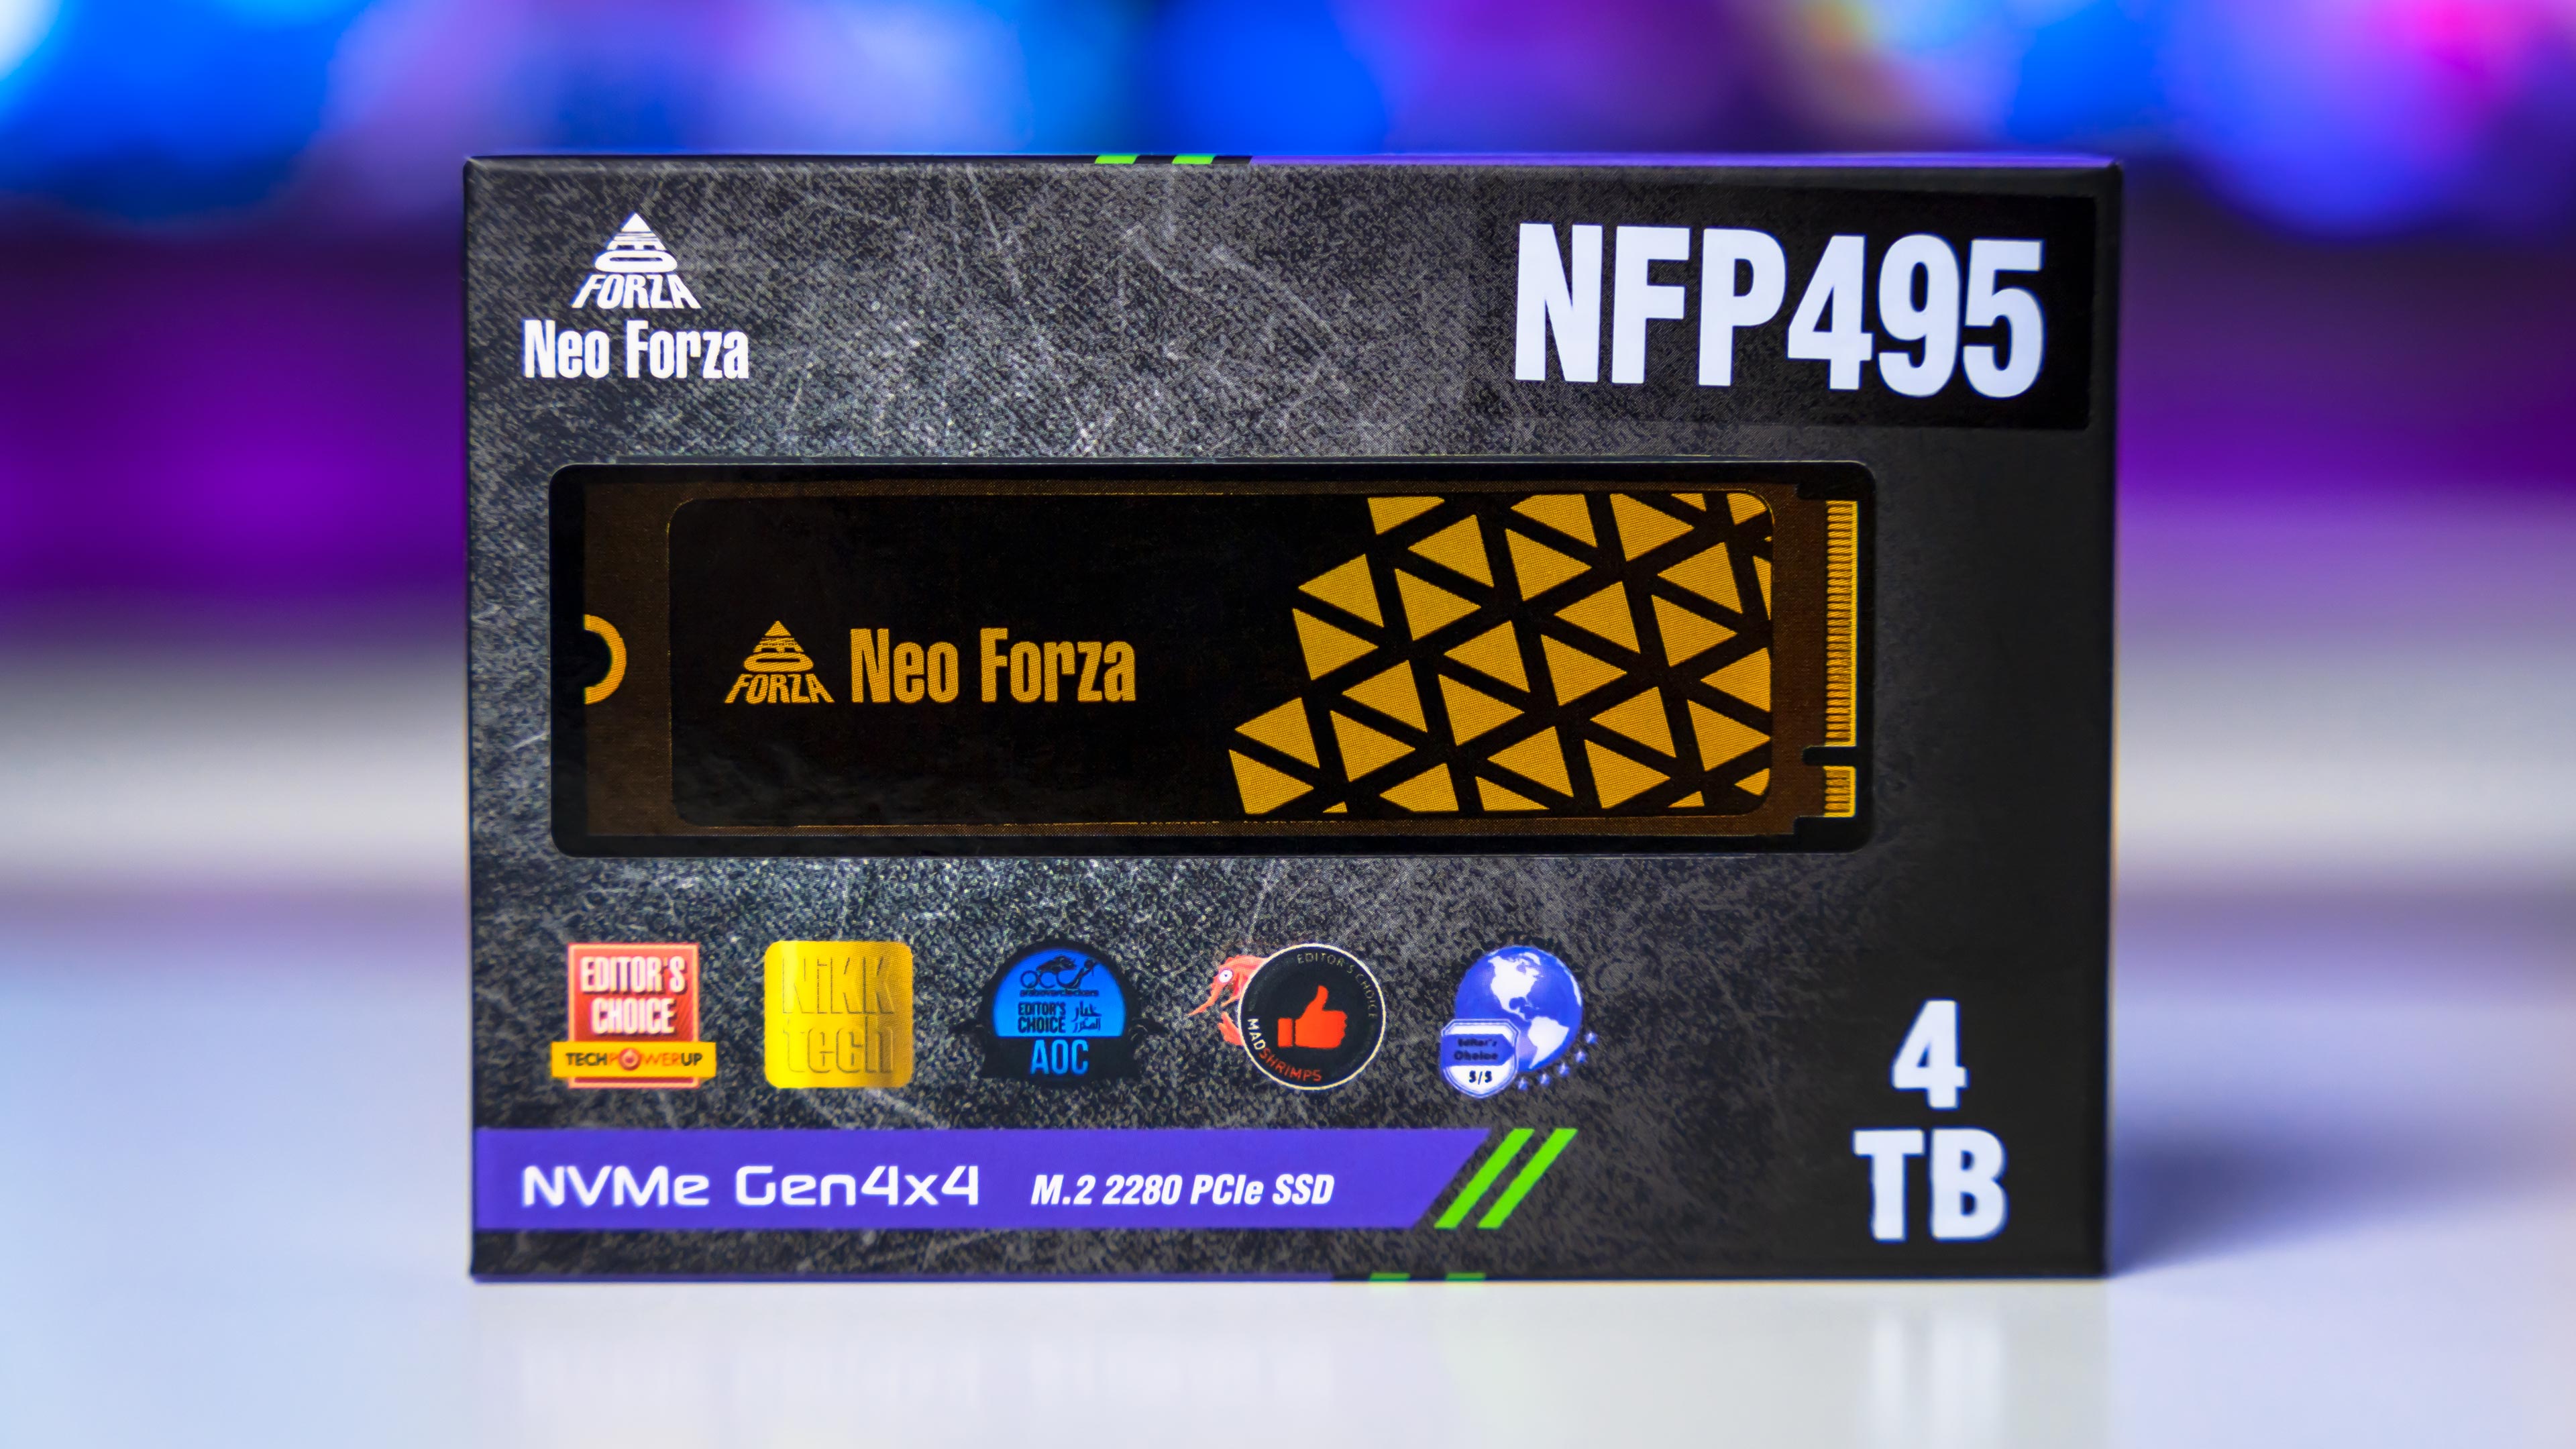 Neo Forza NFP495 4TB Box (1)